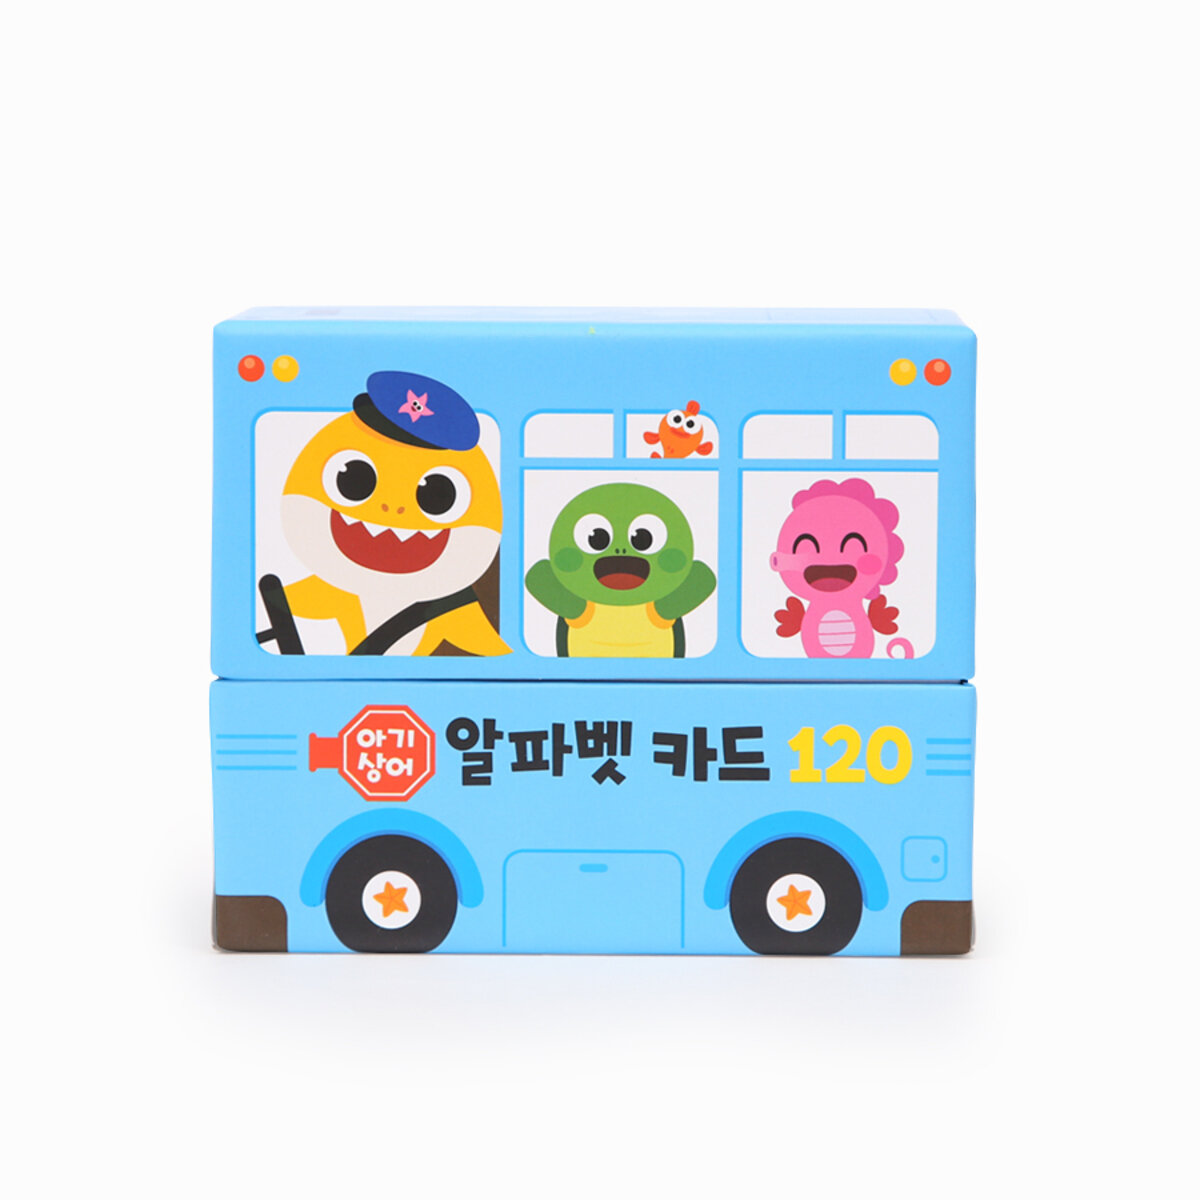 핑크퐁언어학습버스, 단어카드포함